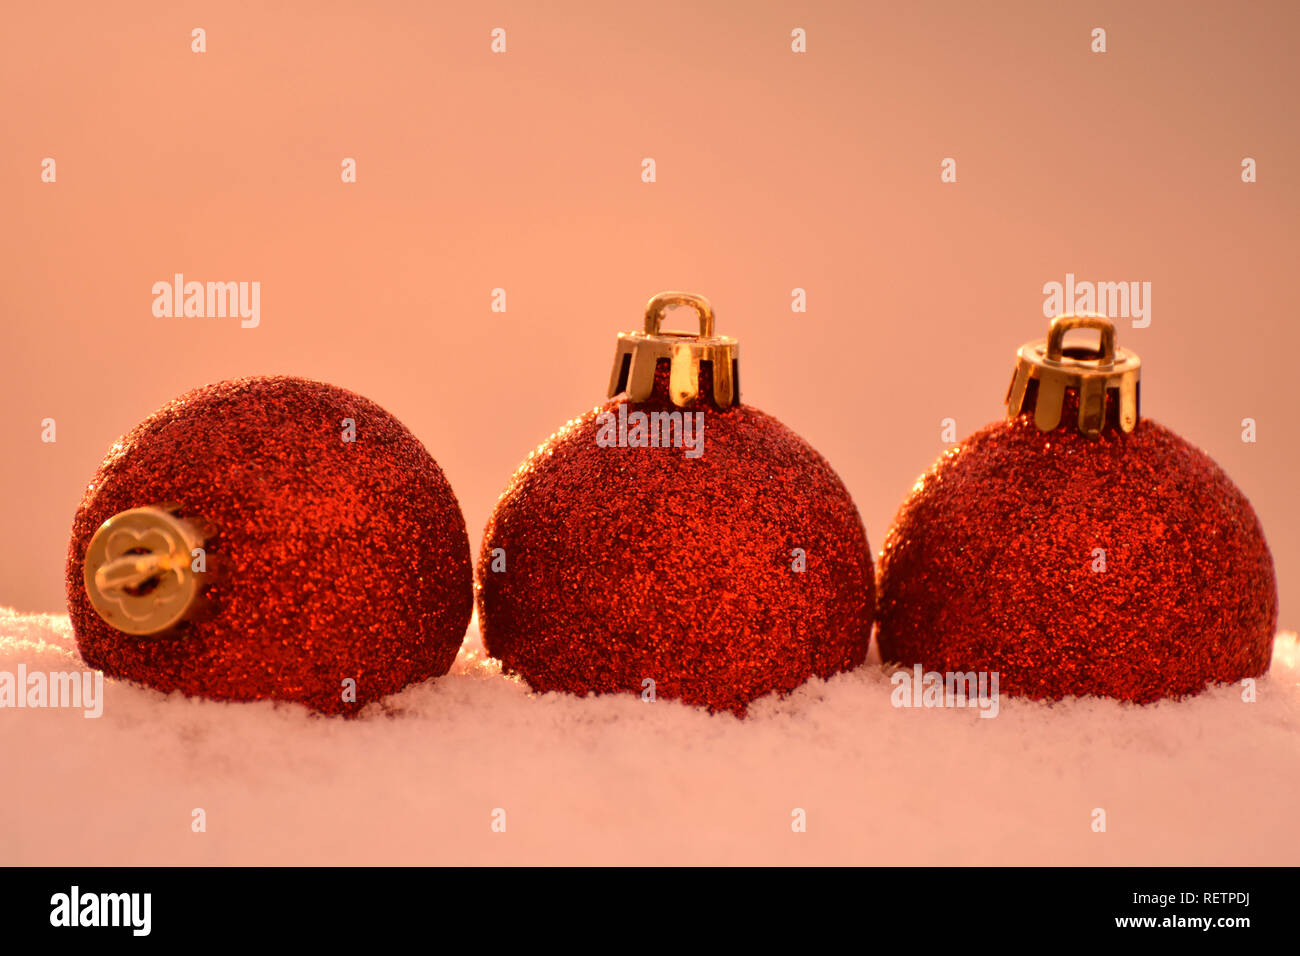 Christmas tree ornaments Stock Photo